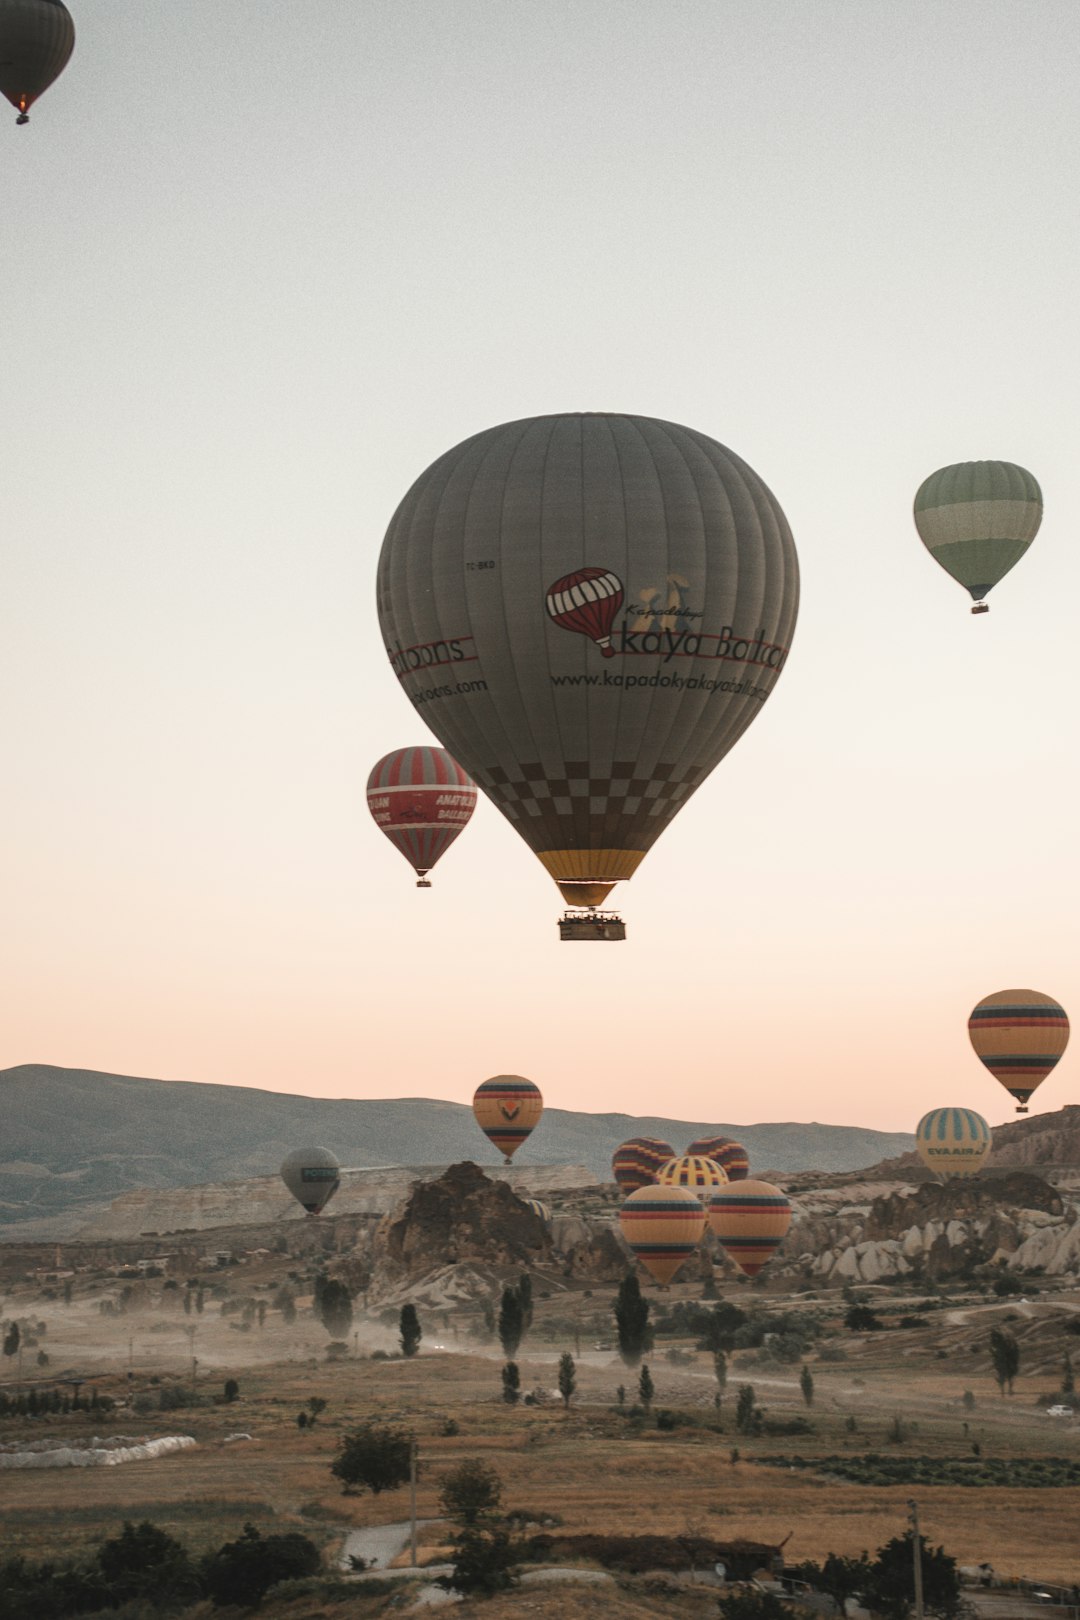 Hot air ballooning photo spot Cappadocia Turkey Göreme Tarihi Milli Parkı